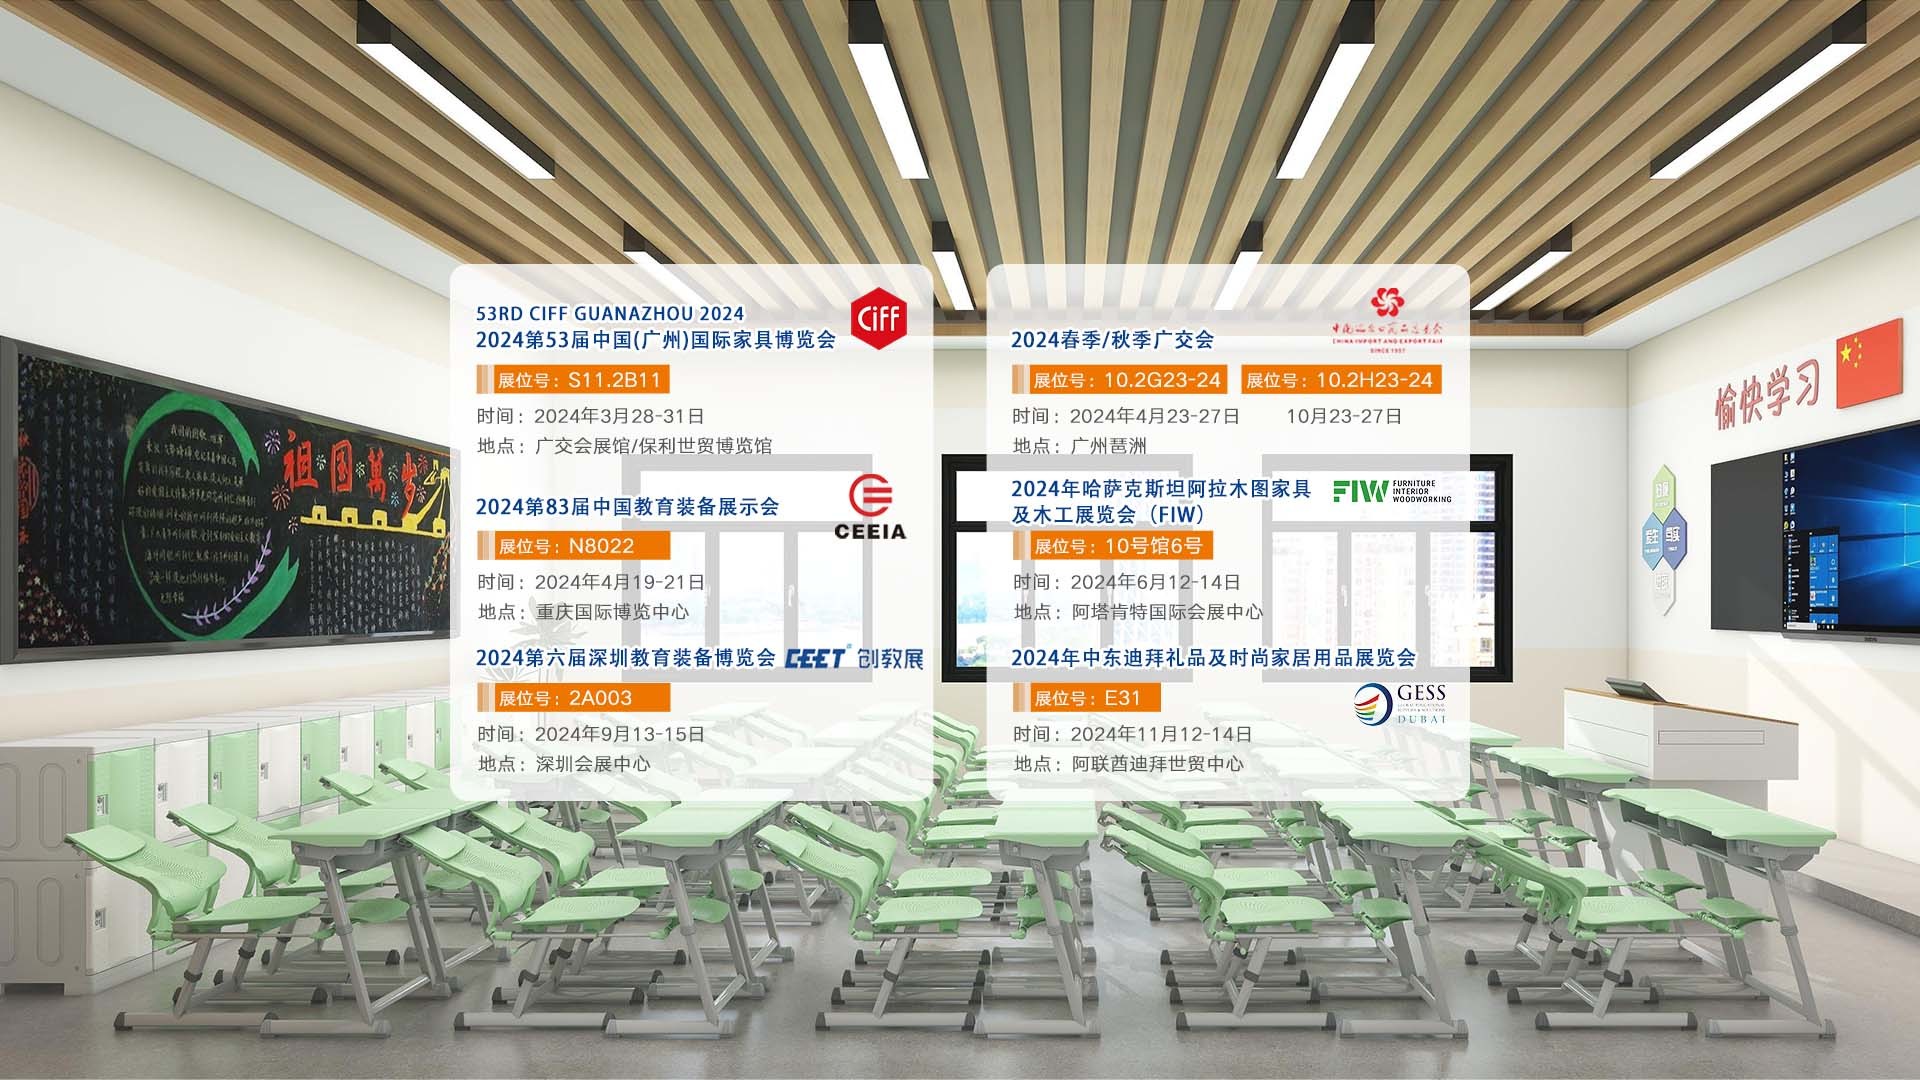 建晟集团一家午休课桌椅工厂，为中国的幼儿园带来全新的欧洲高端榉木系列桌椅储物柜系列产品